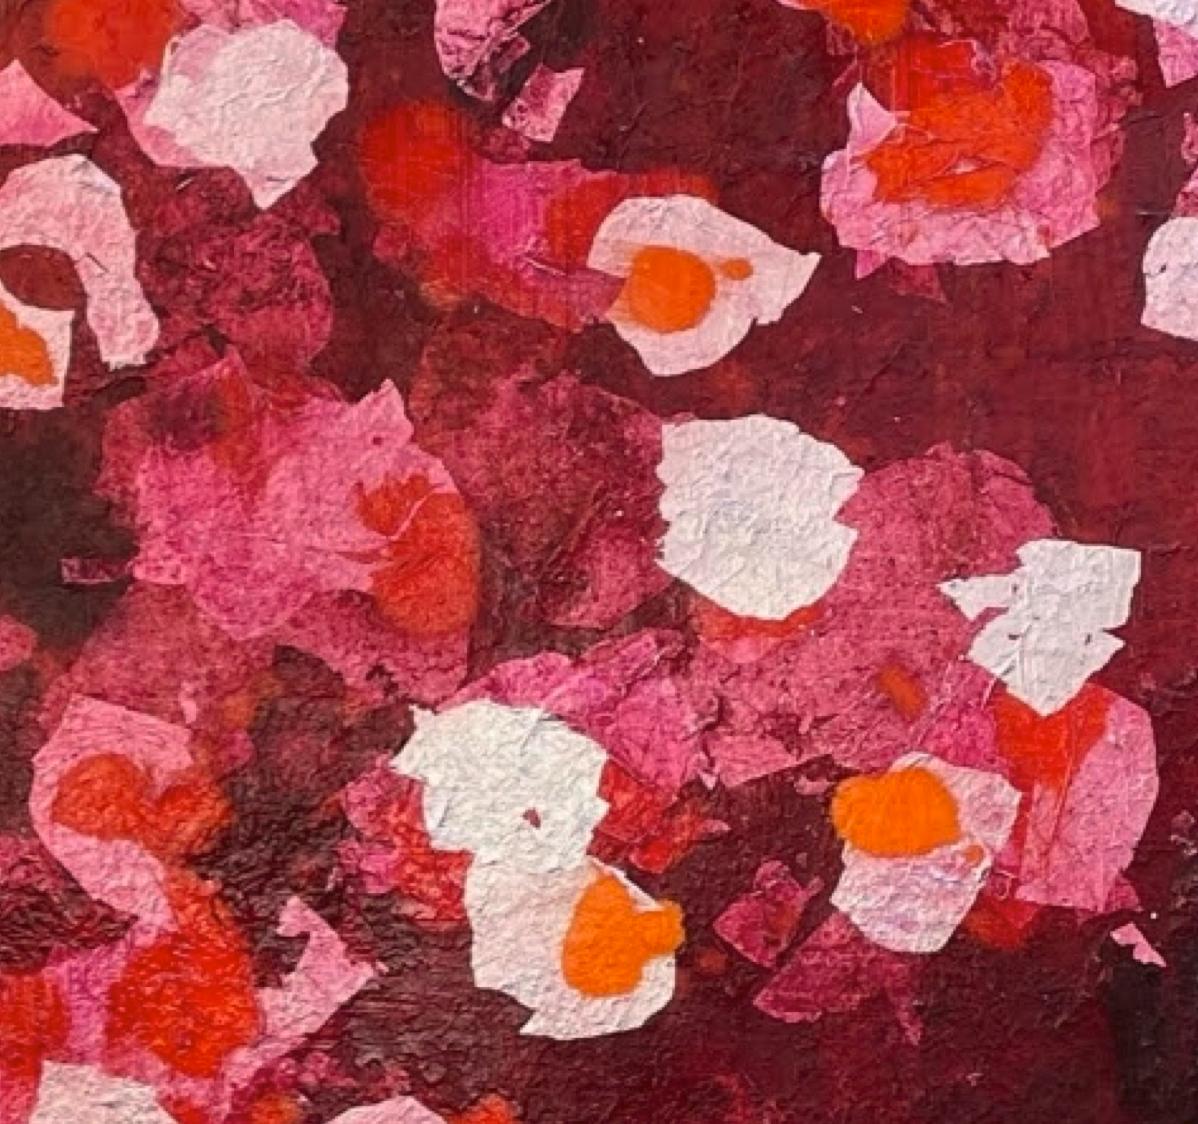 Silbersilberne Blätter – 21. Jahrhundert, Zeitgenössische, abstrakte Malerei, Mixed Media (Rot), Abstract Painting, von Chelsea Davine